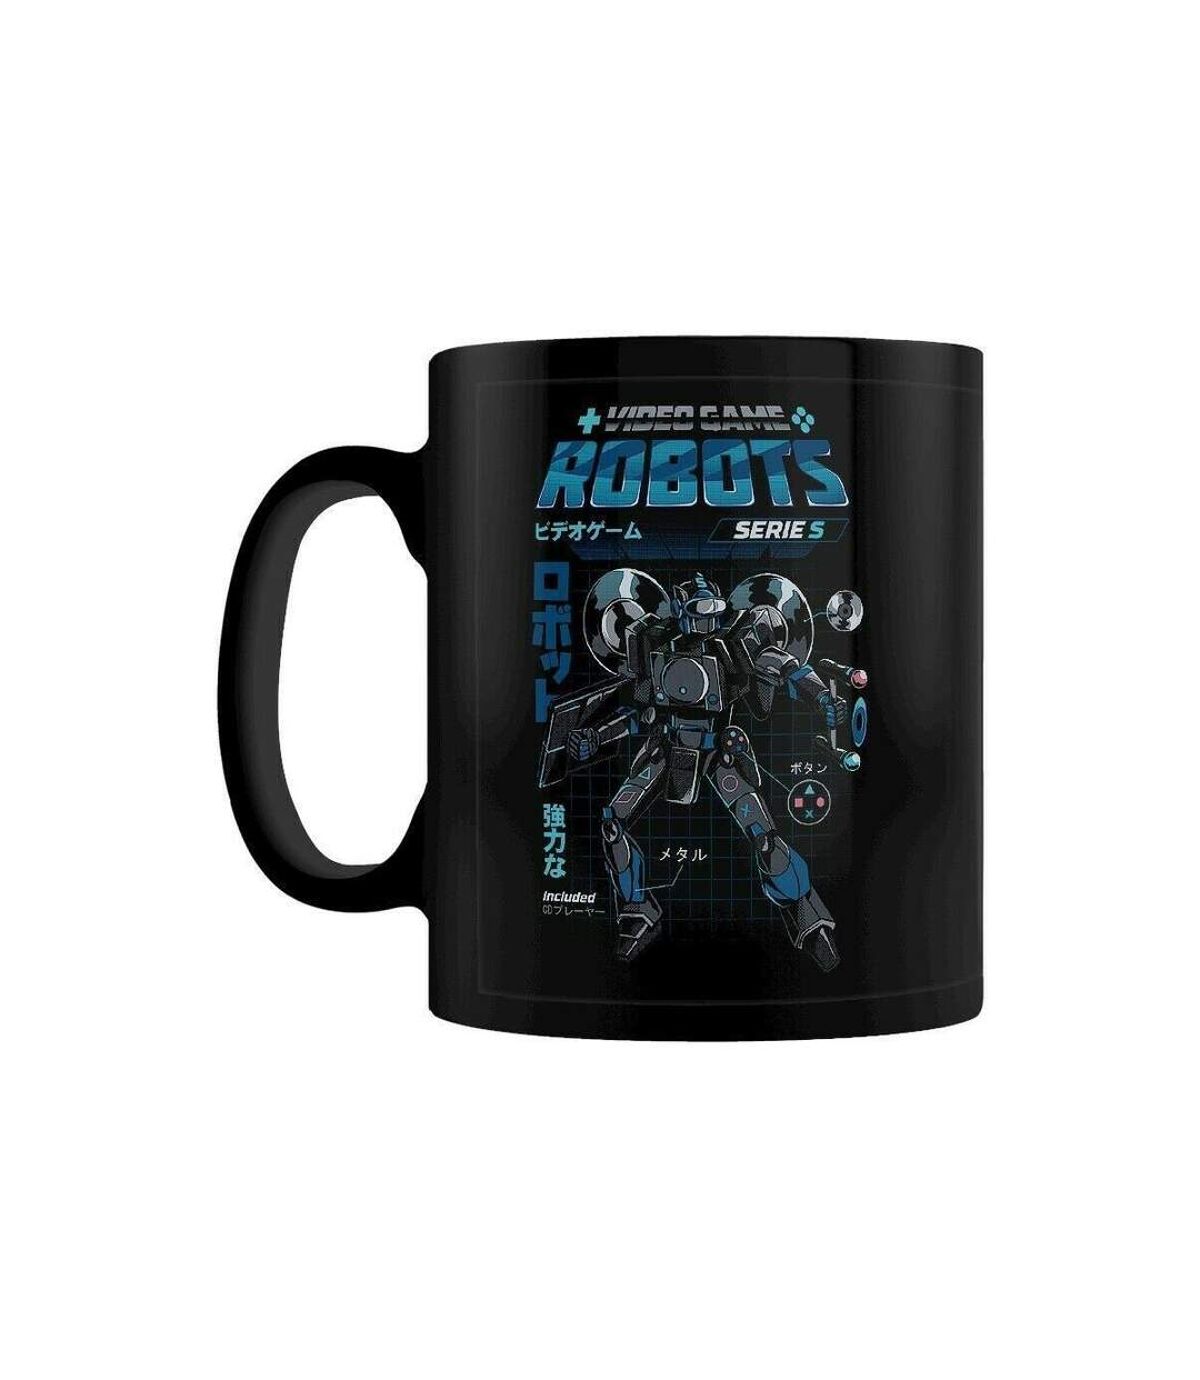 Ilustrata Robots de jeux vidéo Série S Mug (BLACK/BLUE) (Taille unique) - UTPM2934